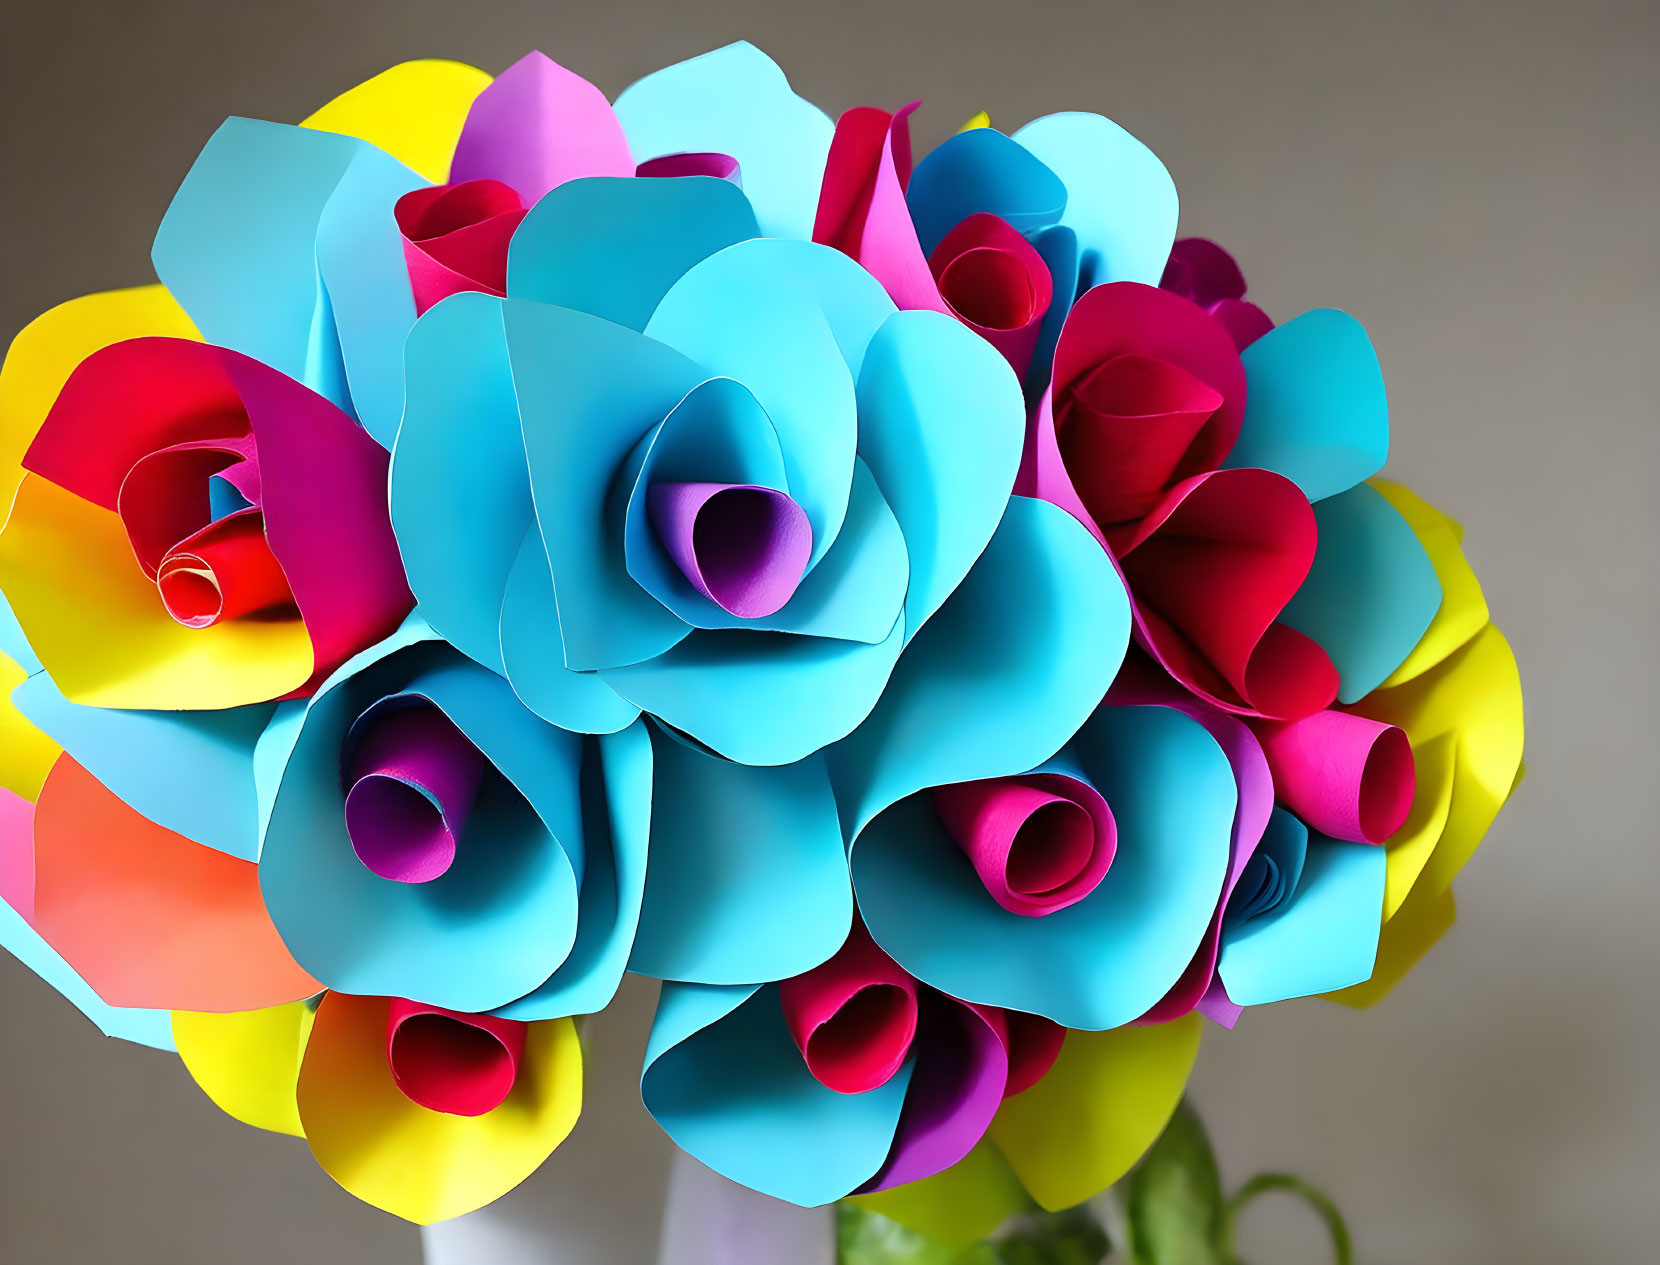 Colorful paper flower bouquet.